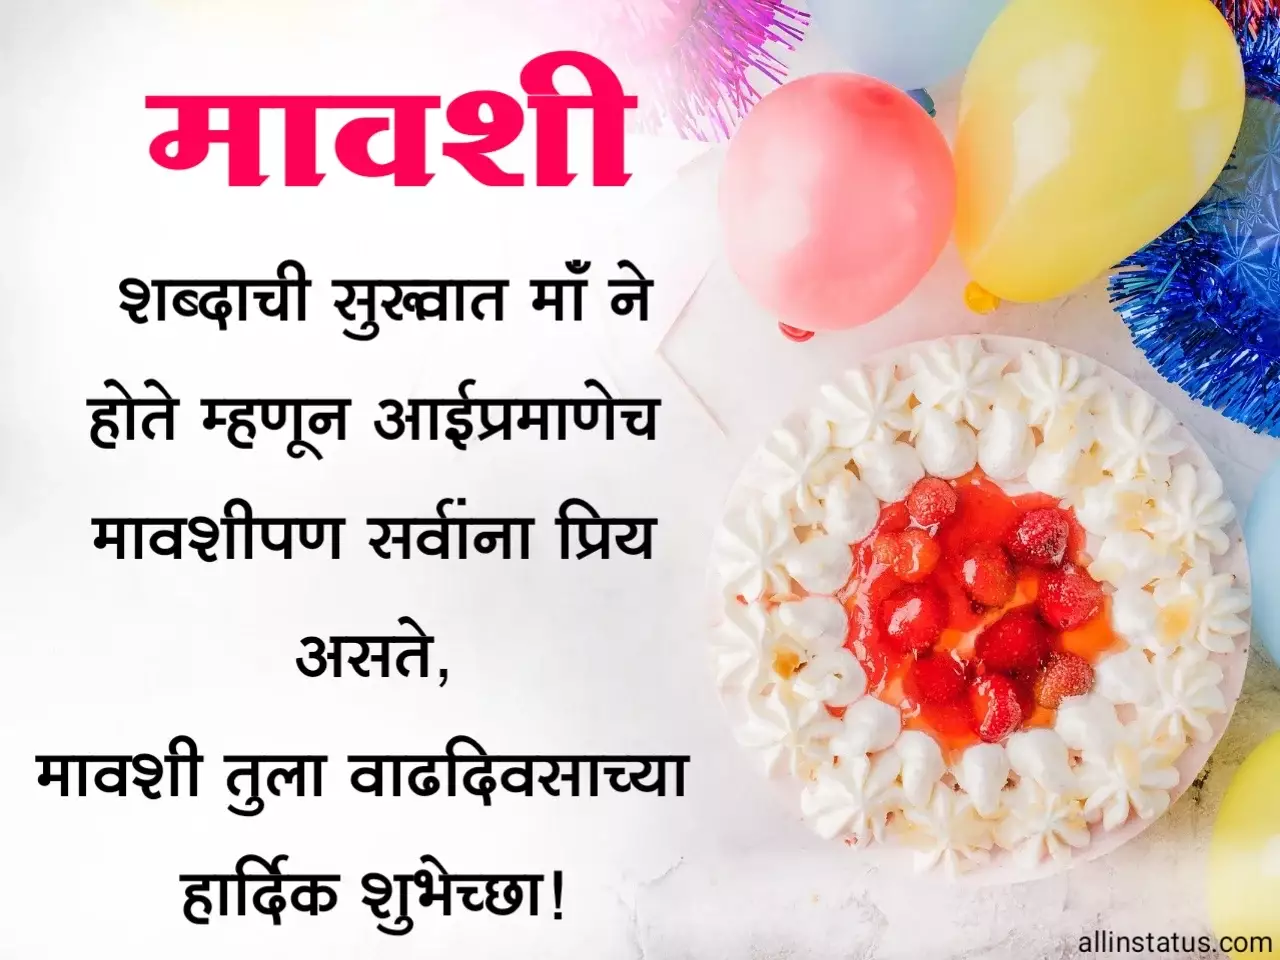 Happy Birthday Image For Mavshi in marathi